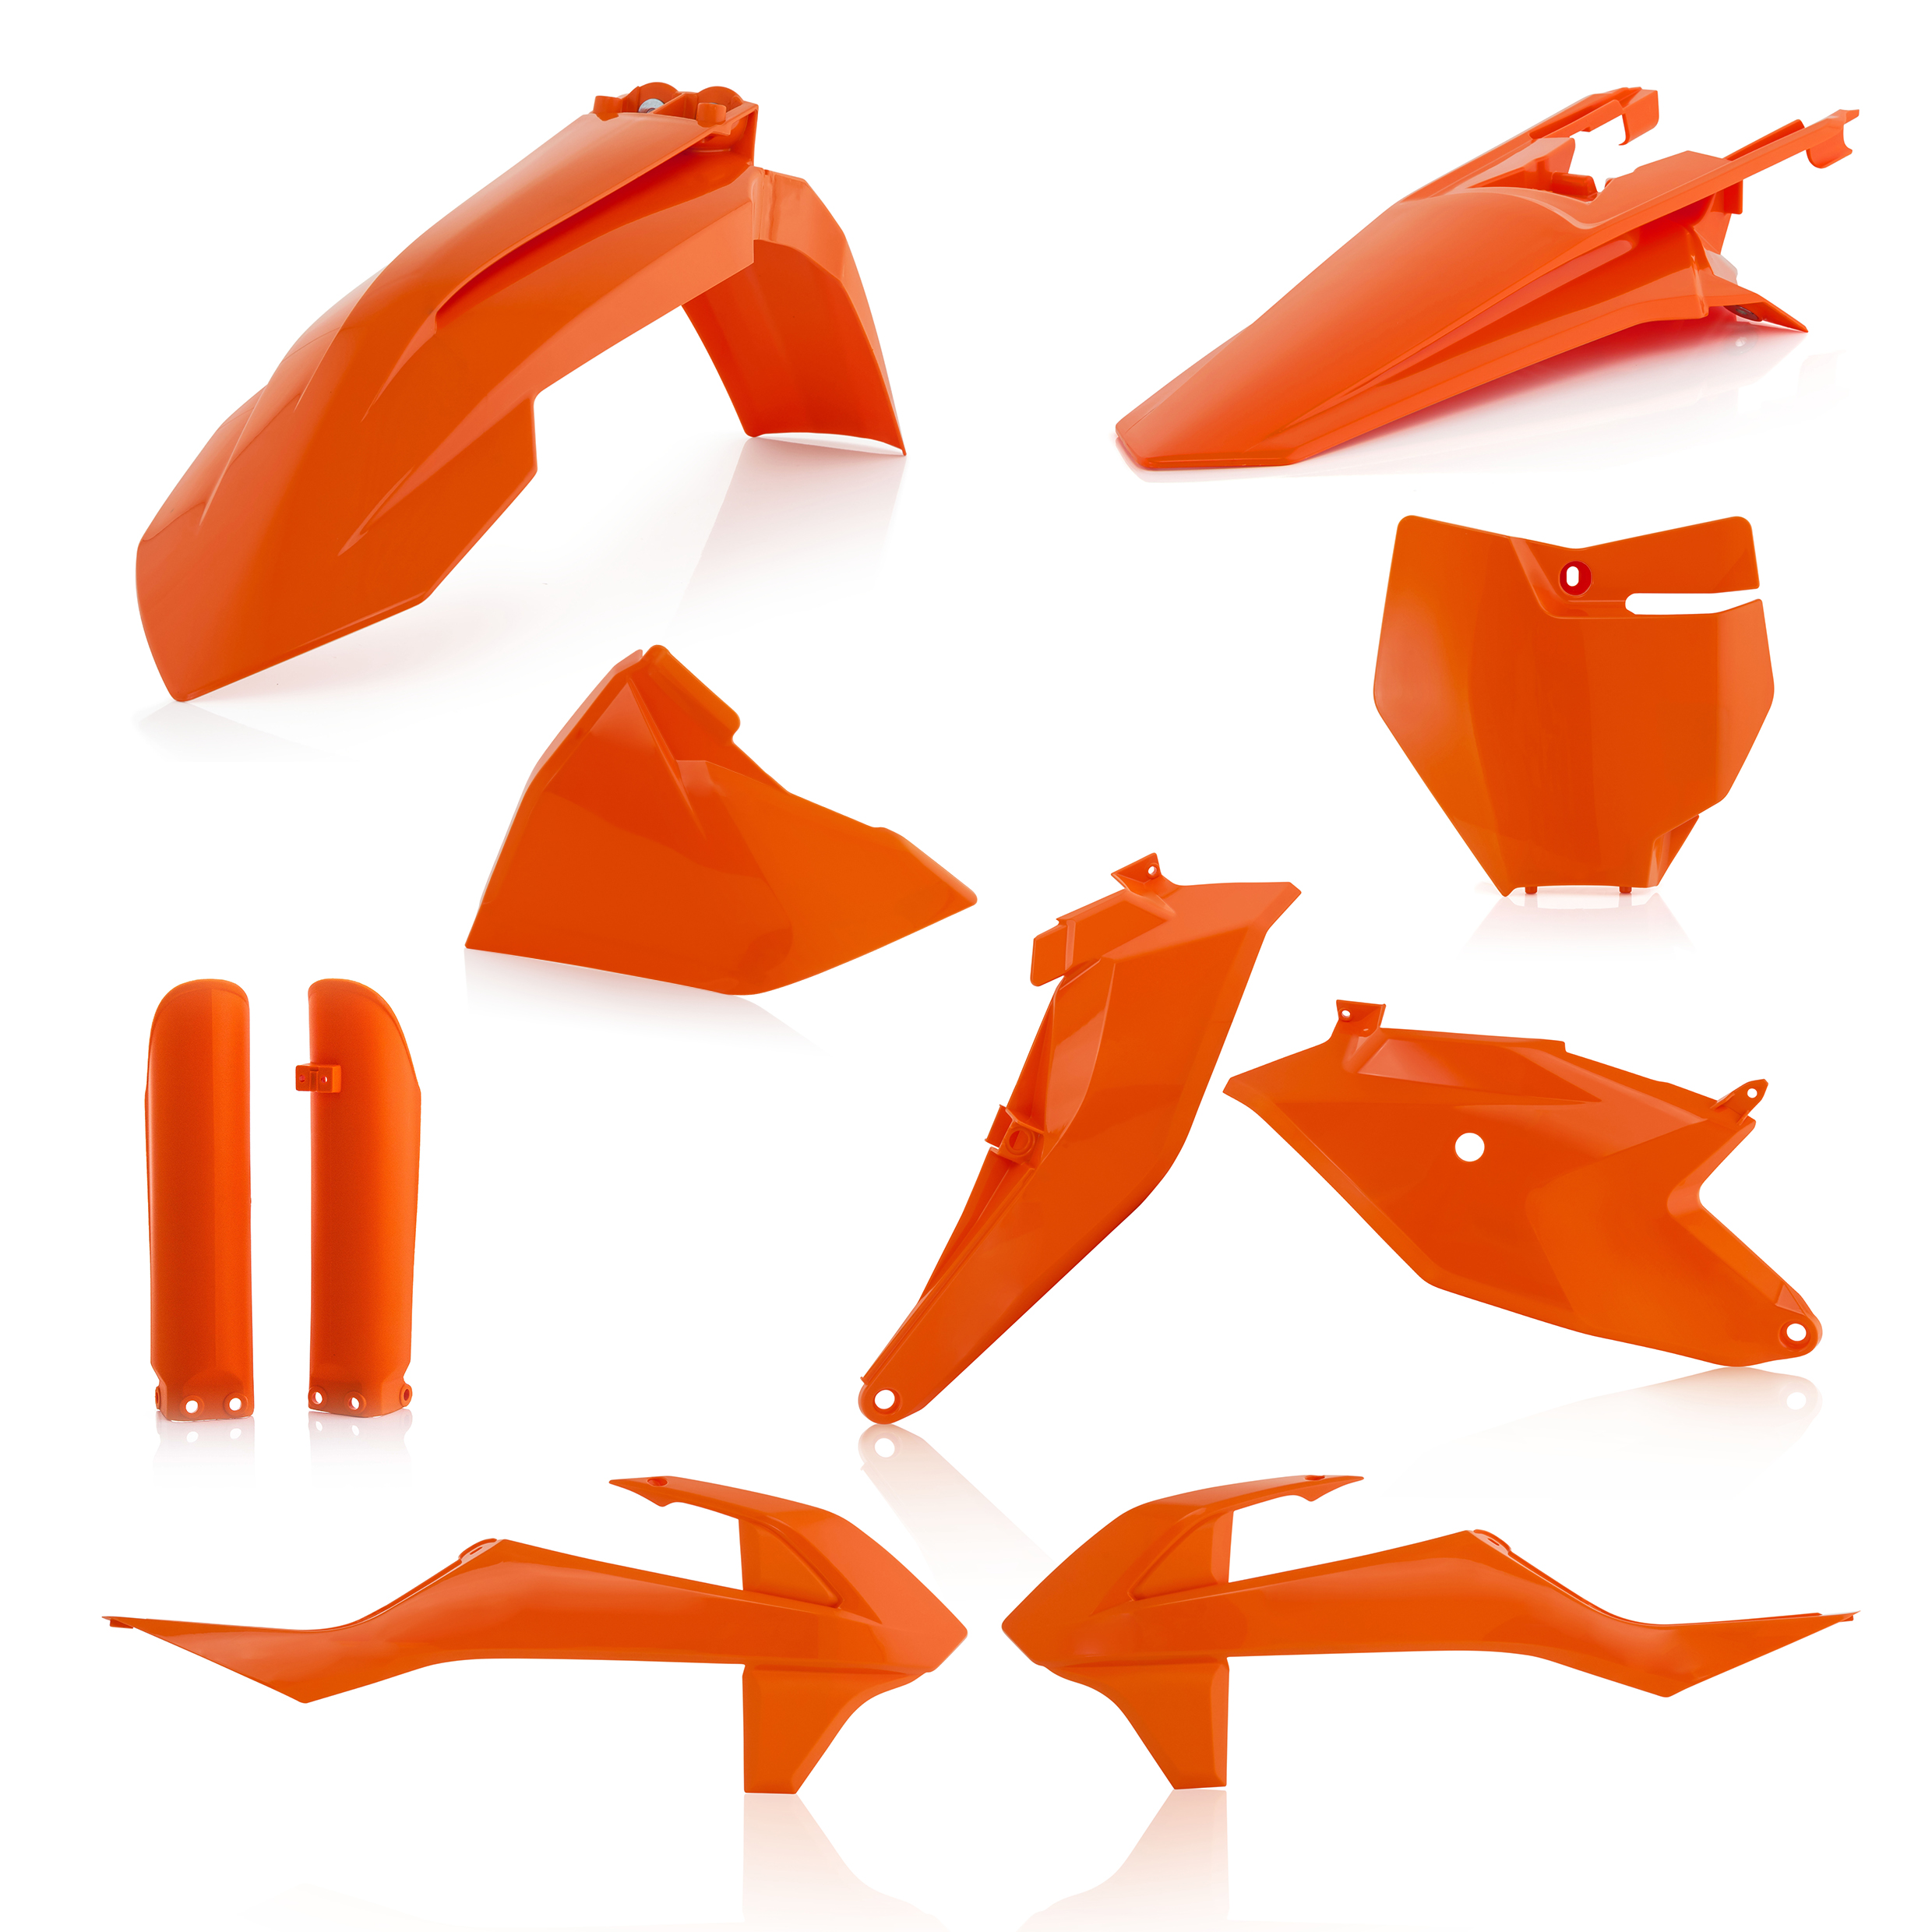 Plastikteile für deine KTM SX 85 in orange16 bestehend aus Kotflügel vorn Kotflügel hinten Kühlerspoiler Seitenteile Gabelschützer Startnummerntafel Air Box Cover